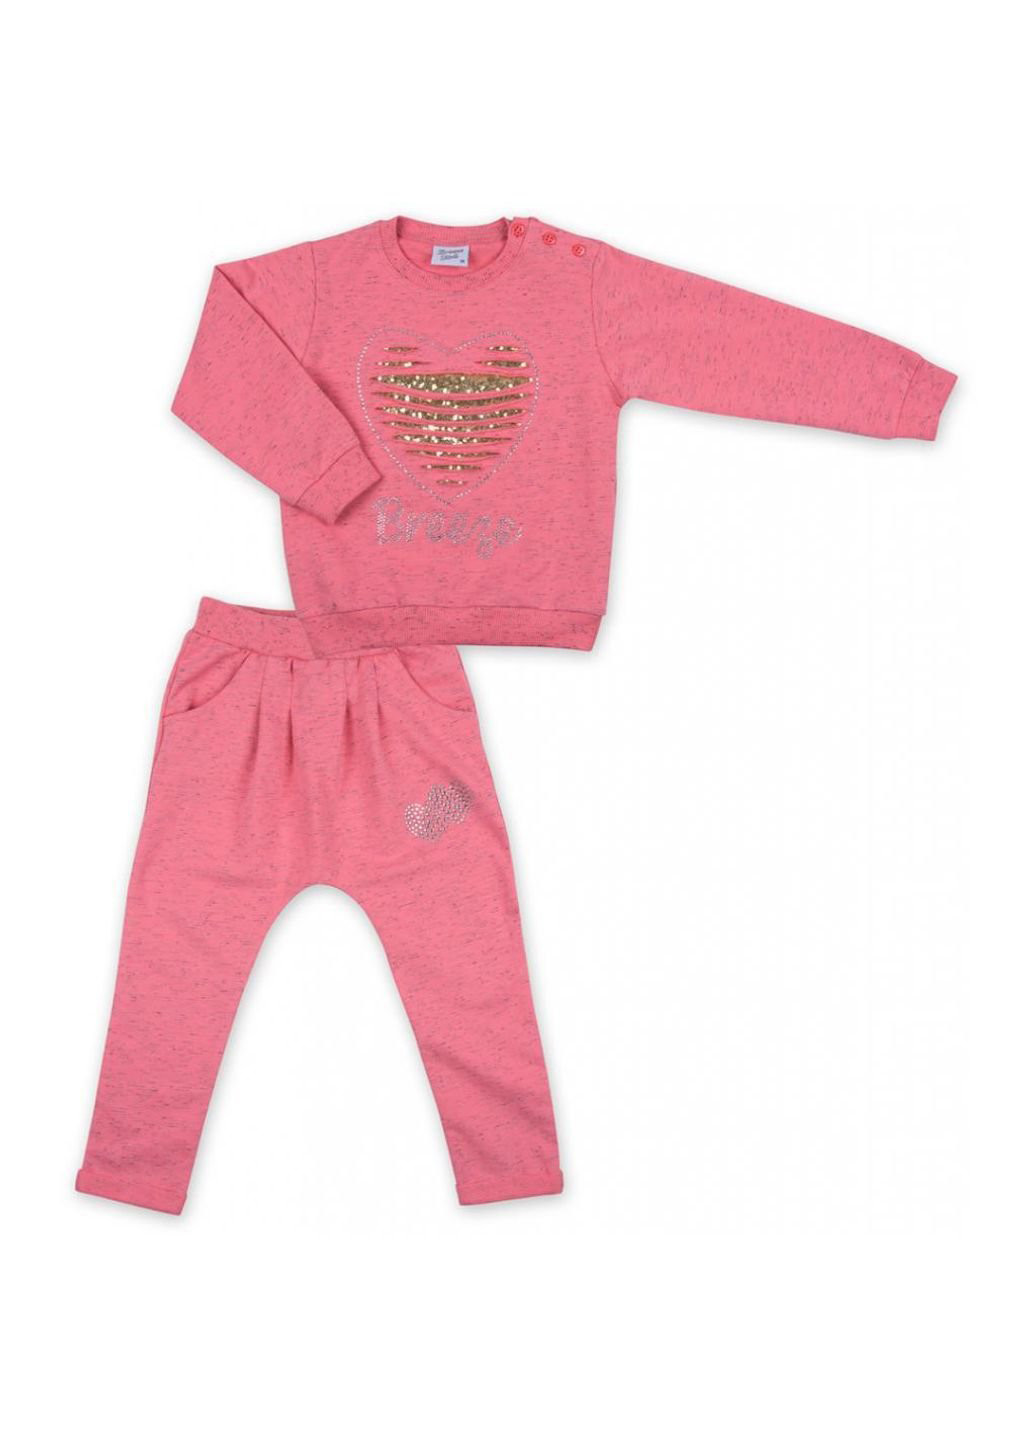 Коралловый набор детской одежды кофта и брюки персиковый меланж (8013-86g-peach) Breeze